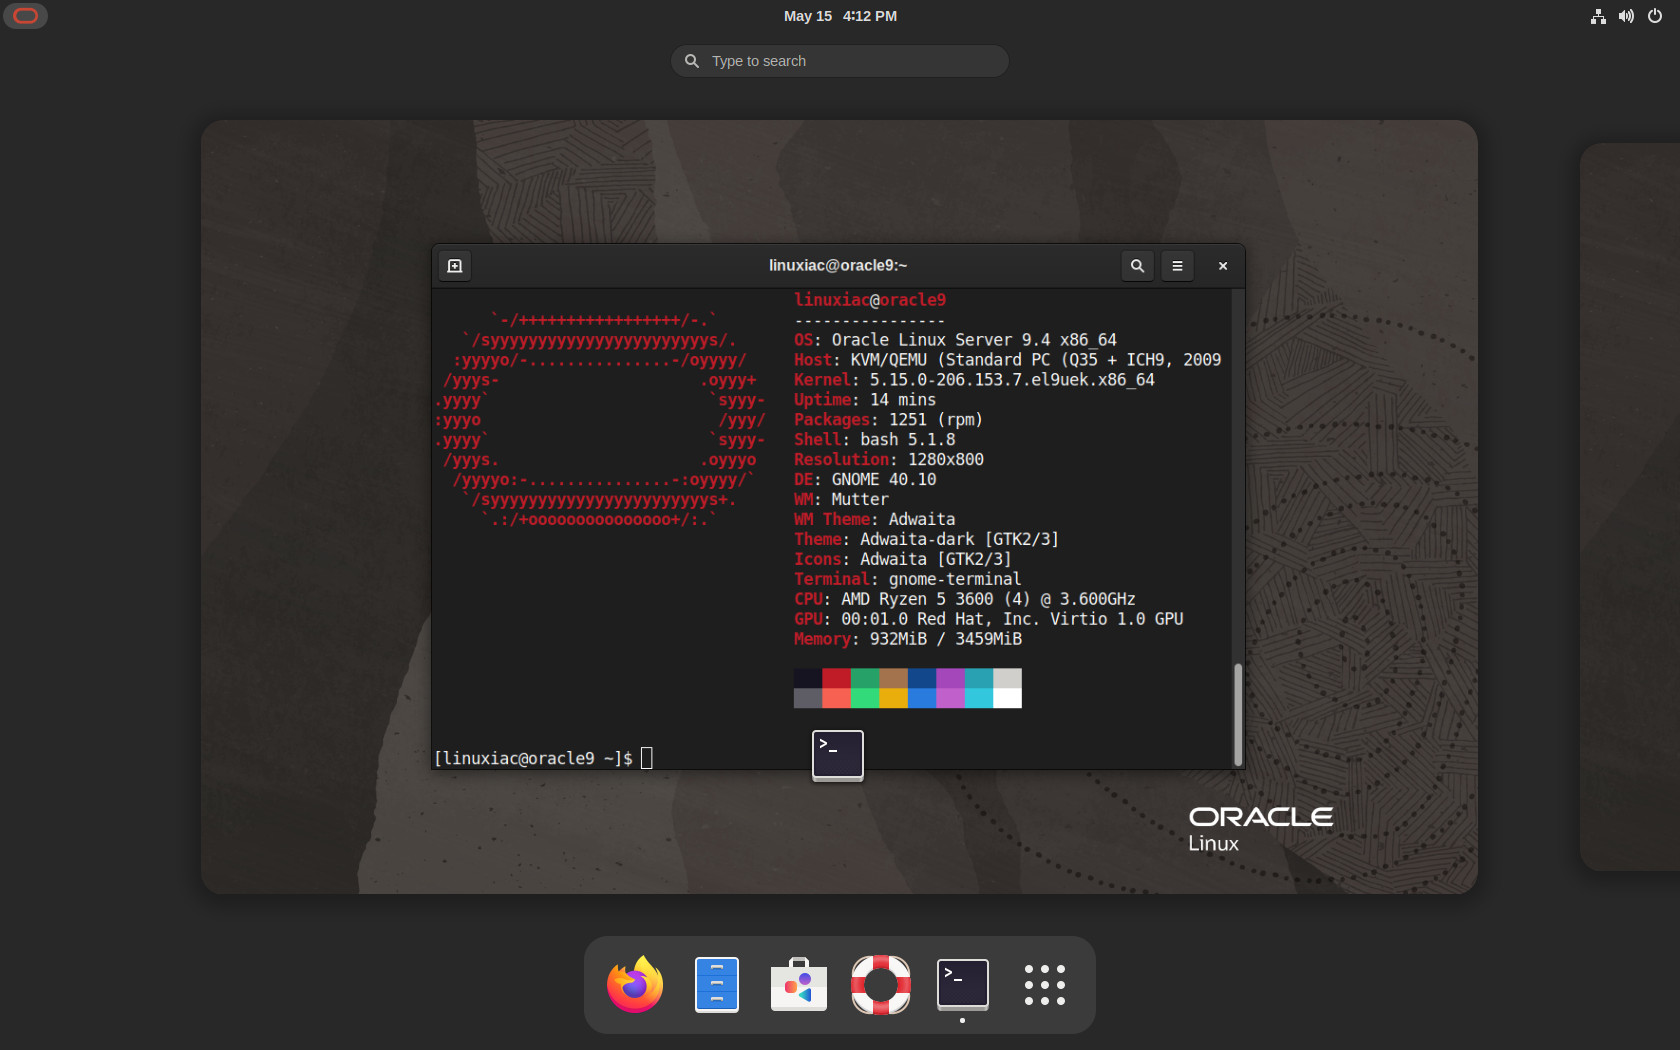 Oracle Linux 9.4